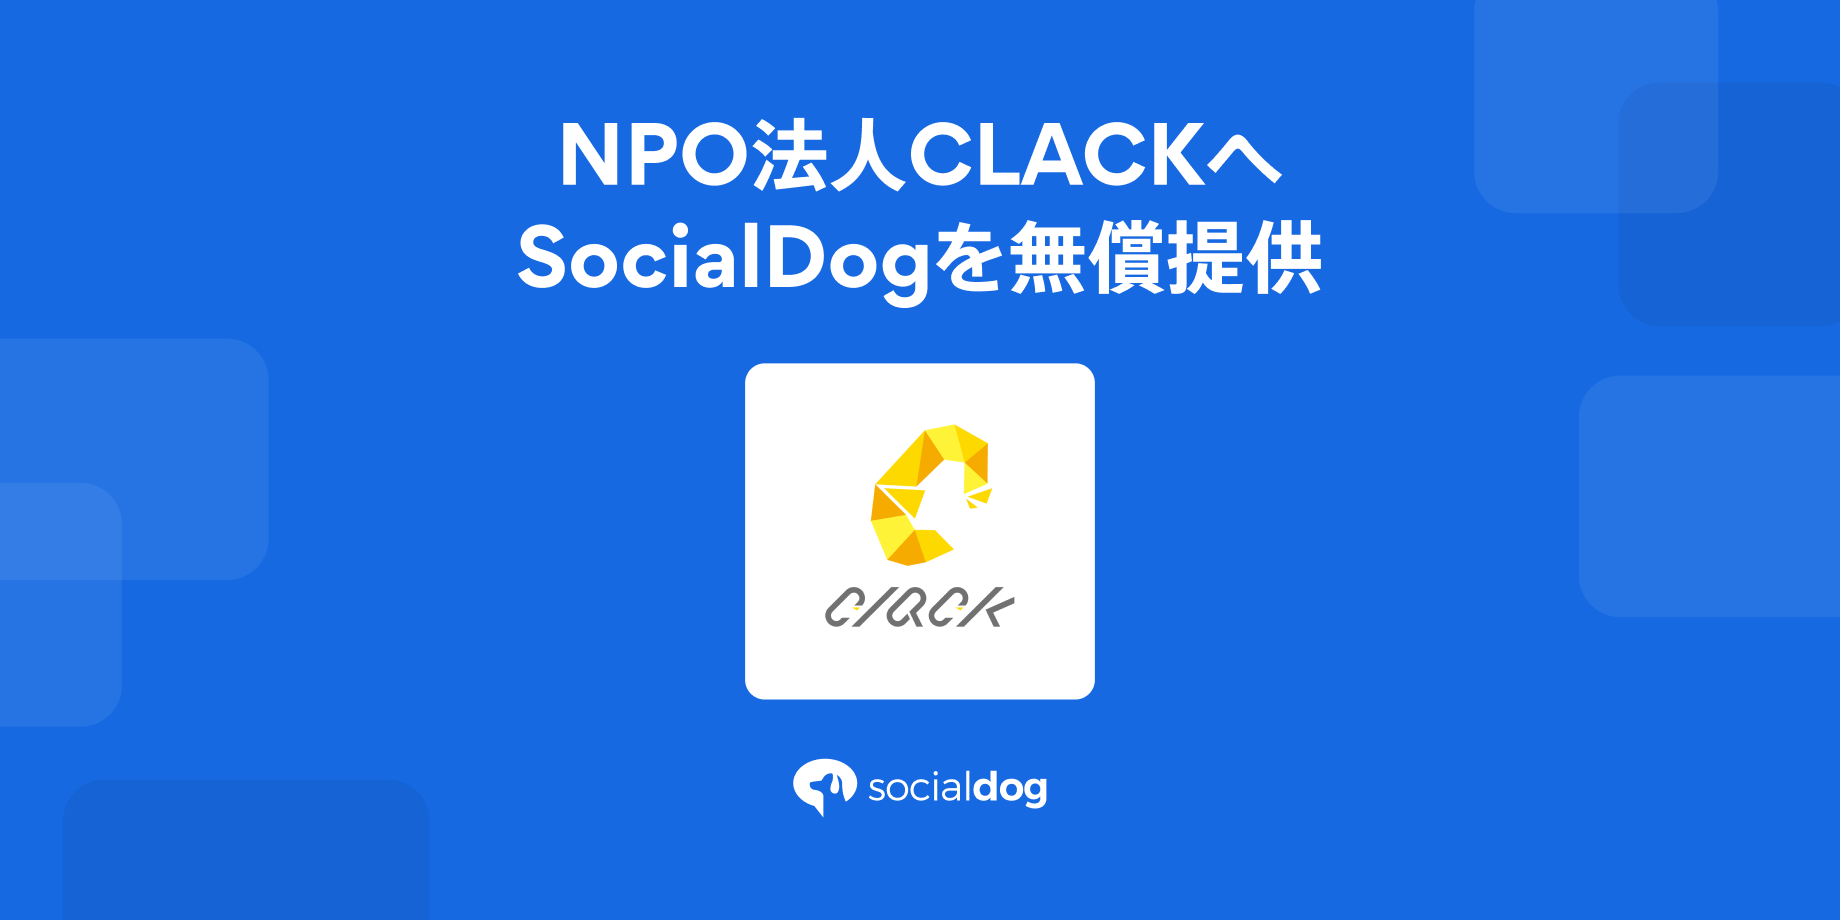 貧困家庭の高校生にプログラミング教育を提供するNPO法人CLACK(クラック)へのSocialDogの無償提供を開始